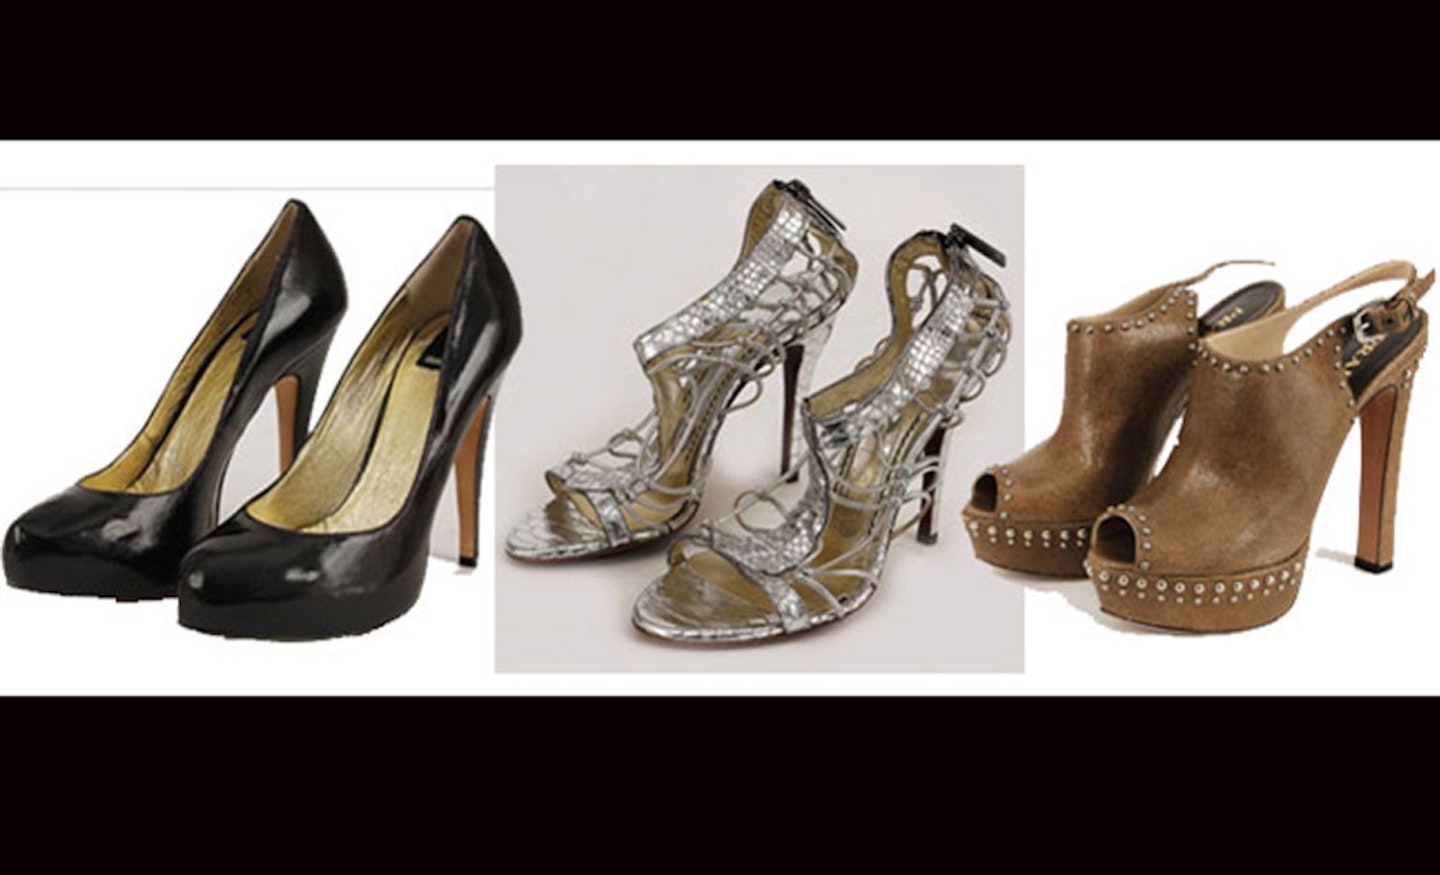 Auction includes Parker's Carrie Bradshaw shoes